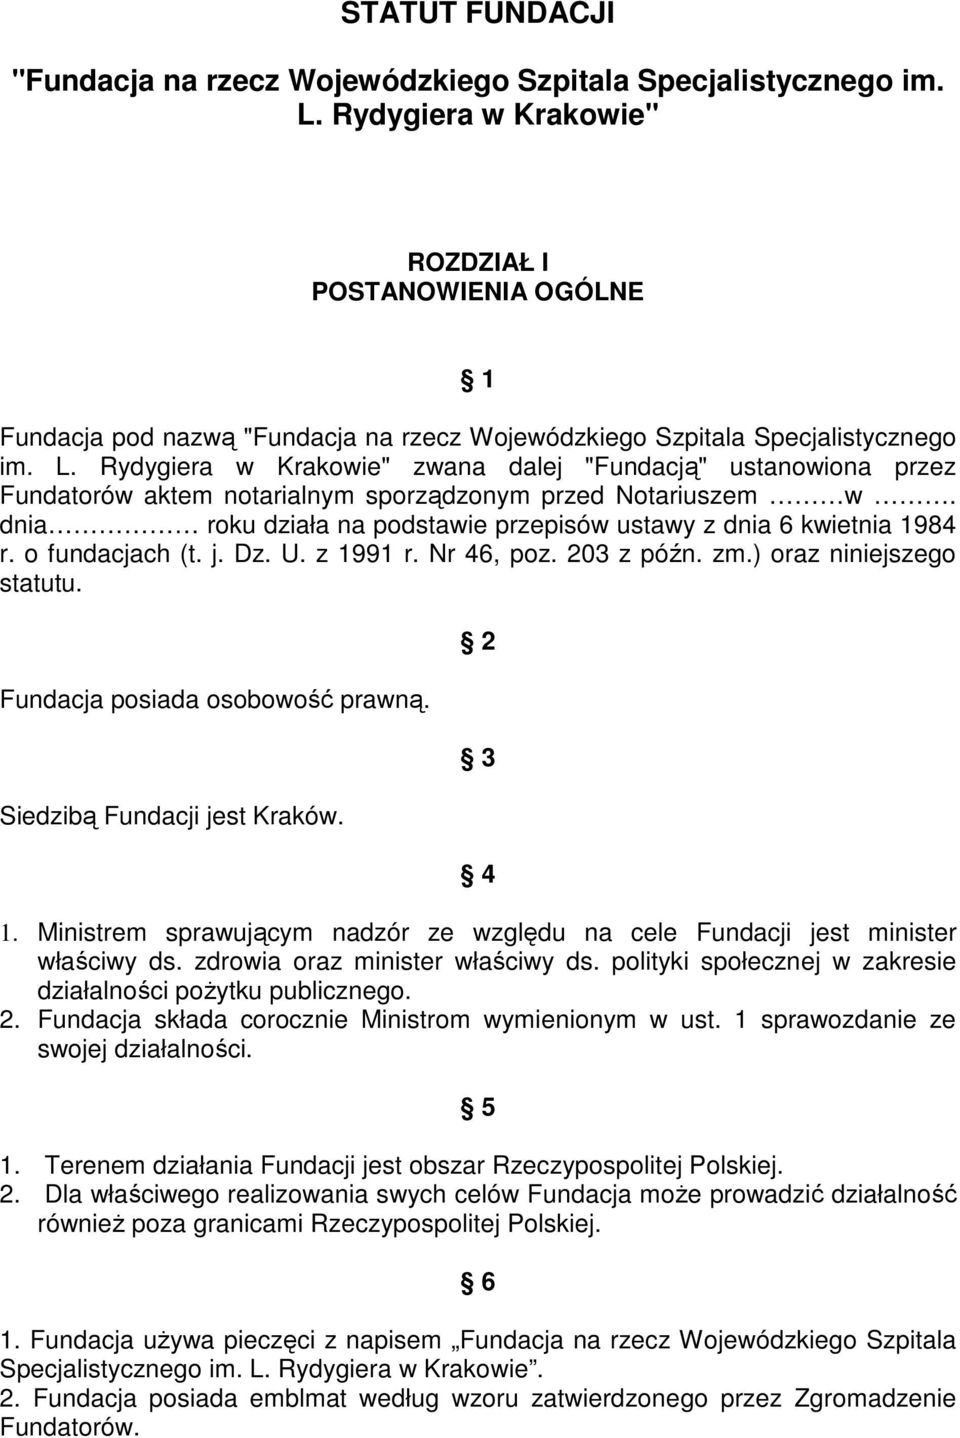 Rydygiera w Krakowie" zwana dalej "Fundacją" ustanowiona przez Fundatorów aktem notarialnym sporządzonym przed Notariuszem w. dnia roku działa na podstawie przepisów ustawy z dnia 6 kwietnia 1984 r.